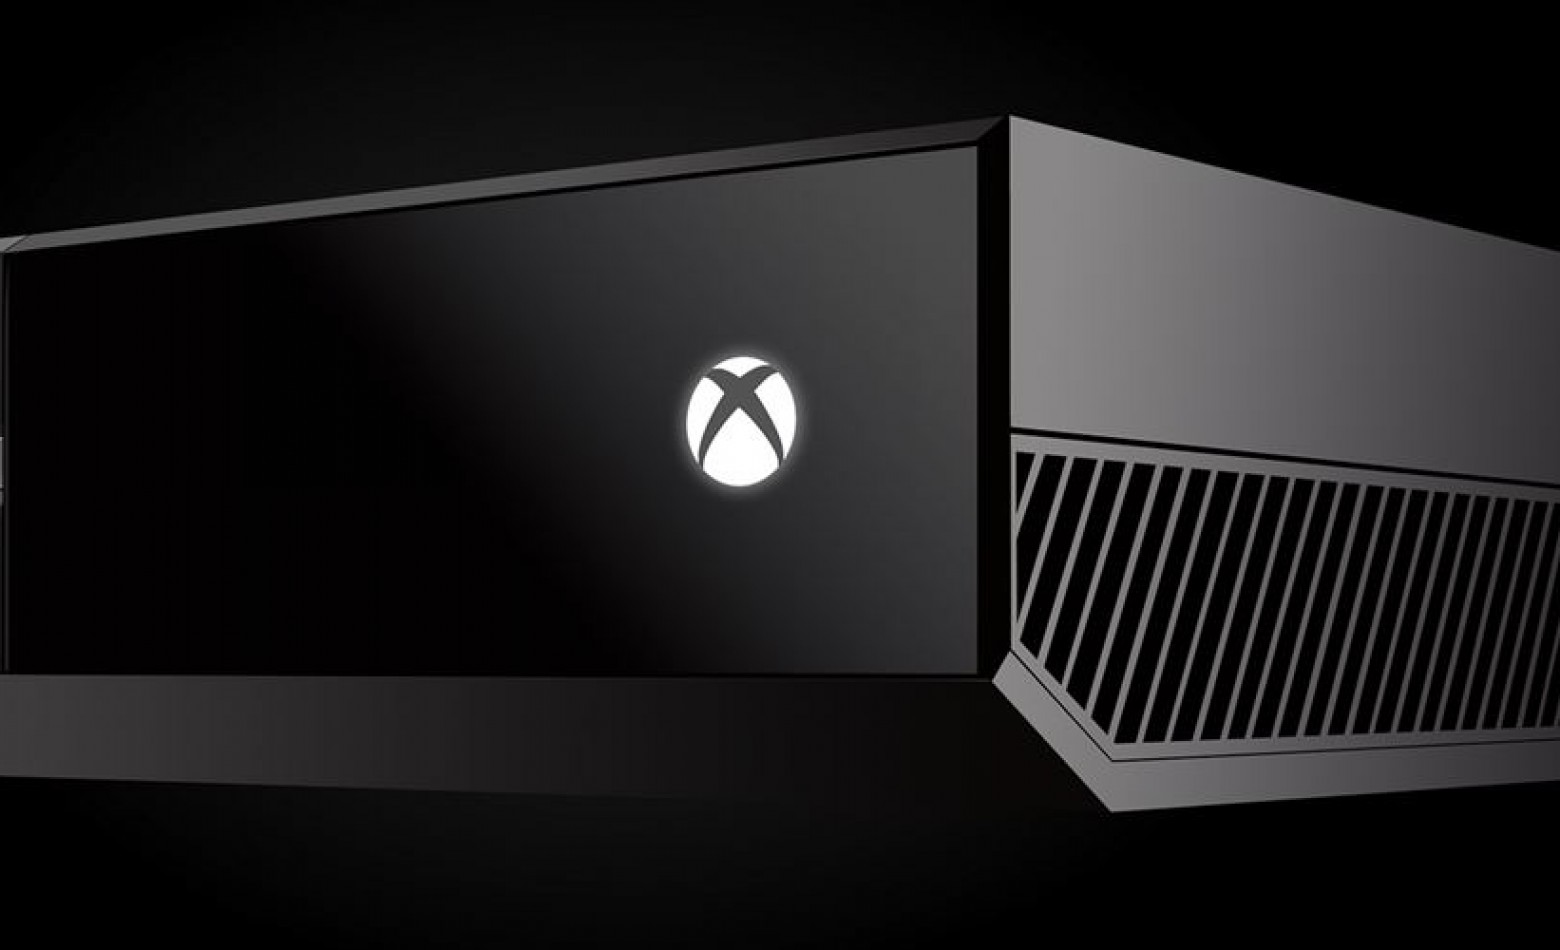 Novos chips podem indicar desenvolvimento de versão “slim” do Xbox One